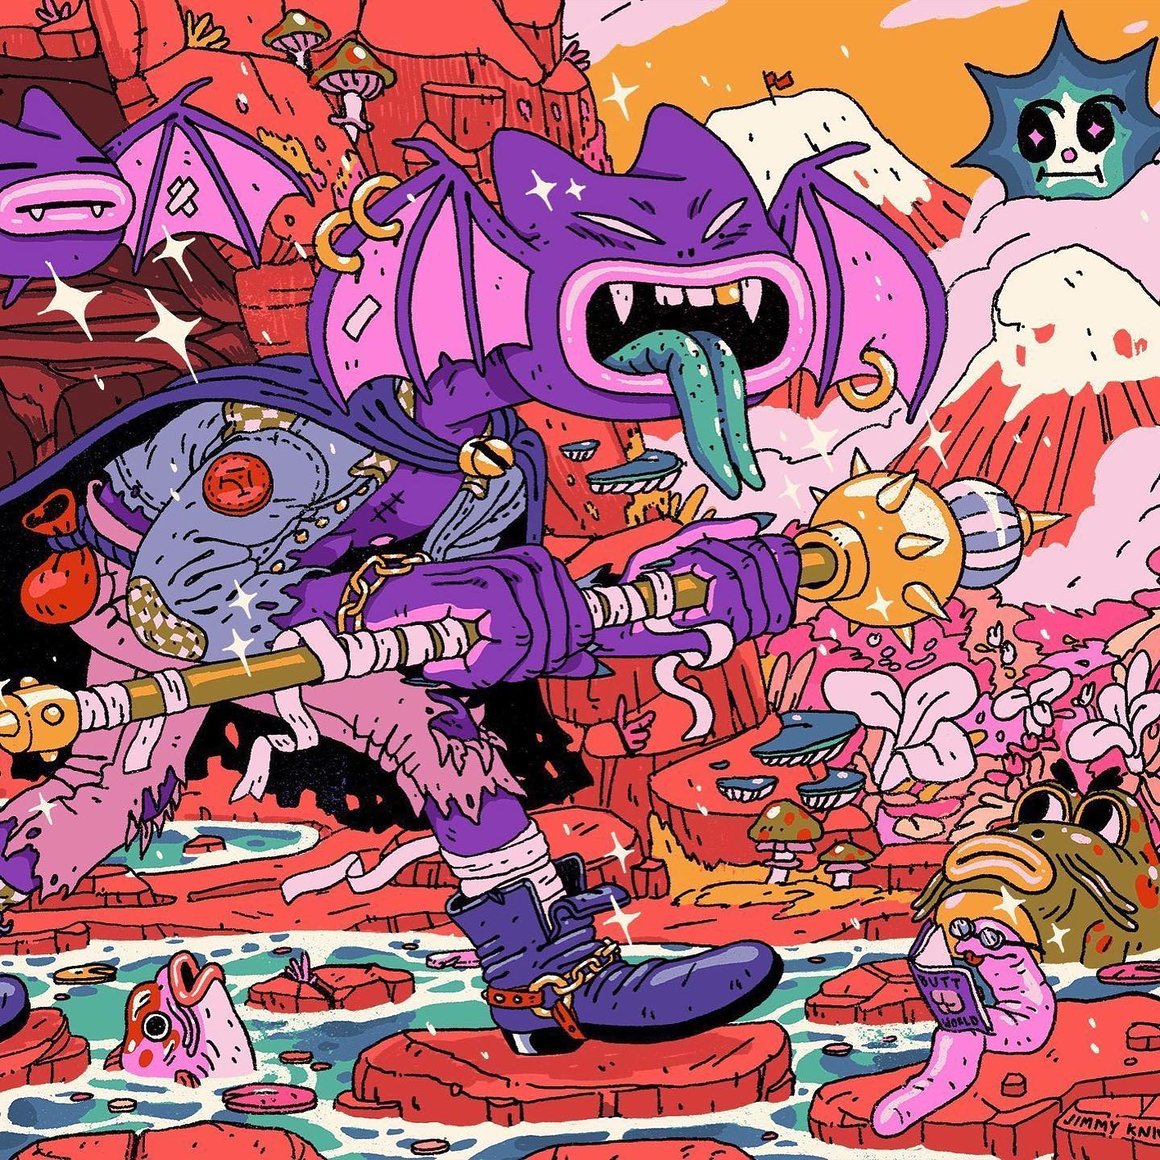 Illustration psychédélique représentant un dragon avec un corps d'humain et une tête de chat violet. Il marche dans un monde rempli de couleurs, de champignons et de créatures étranges.